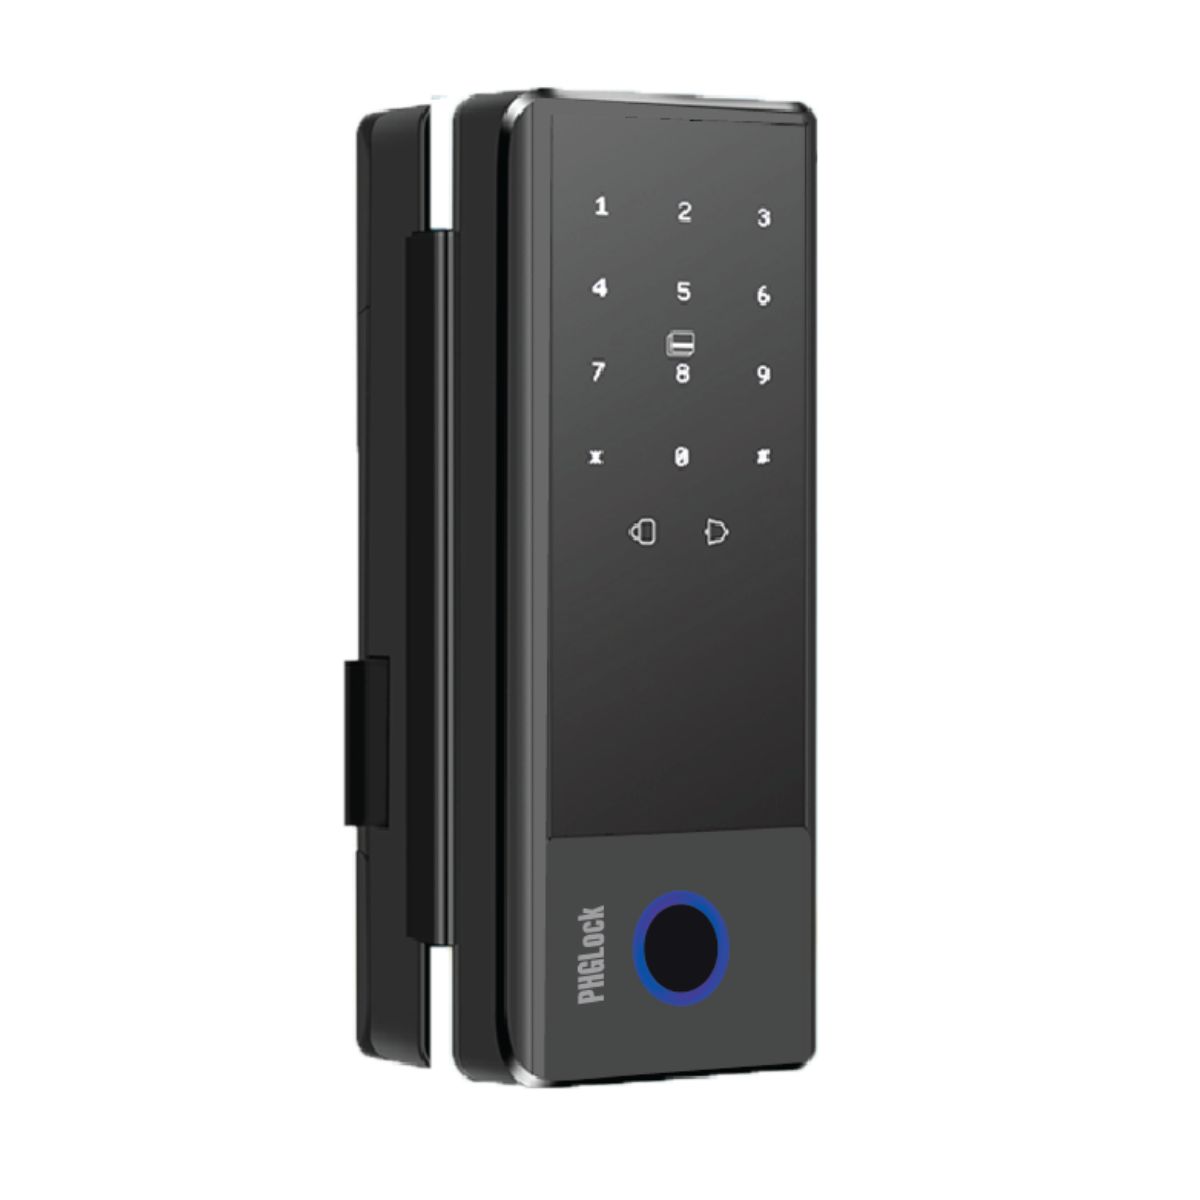 Khóa cửa điện tử cho cửa kính PHGLock FG5604 màu đen, 100 vân tay, 100 thẻ, 100 mã số, mở bằng Bluetooth và chìa cơ